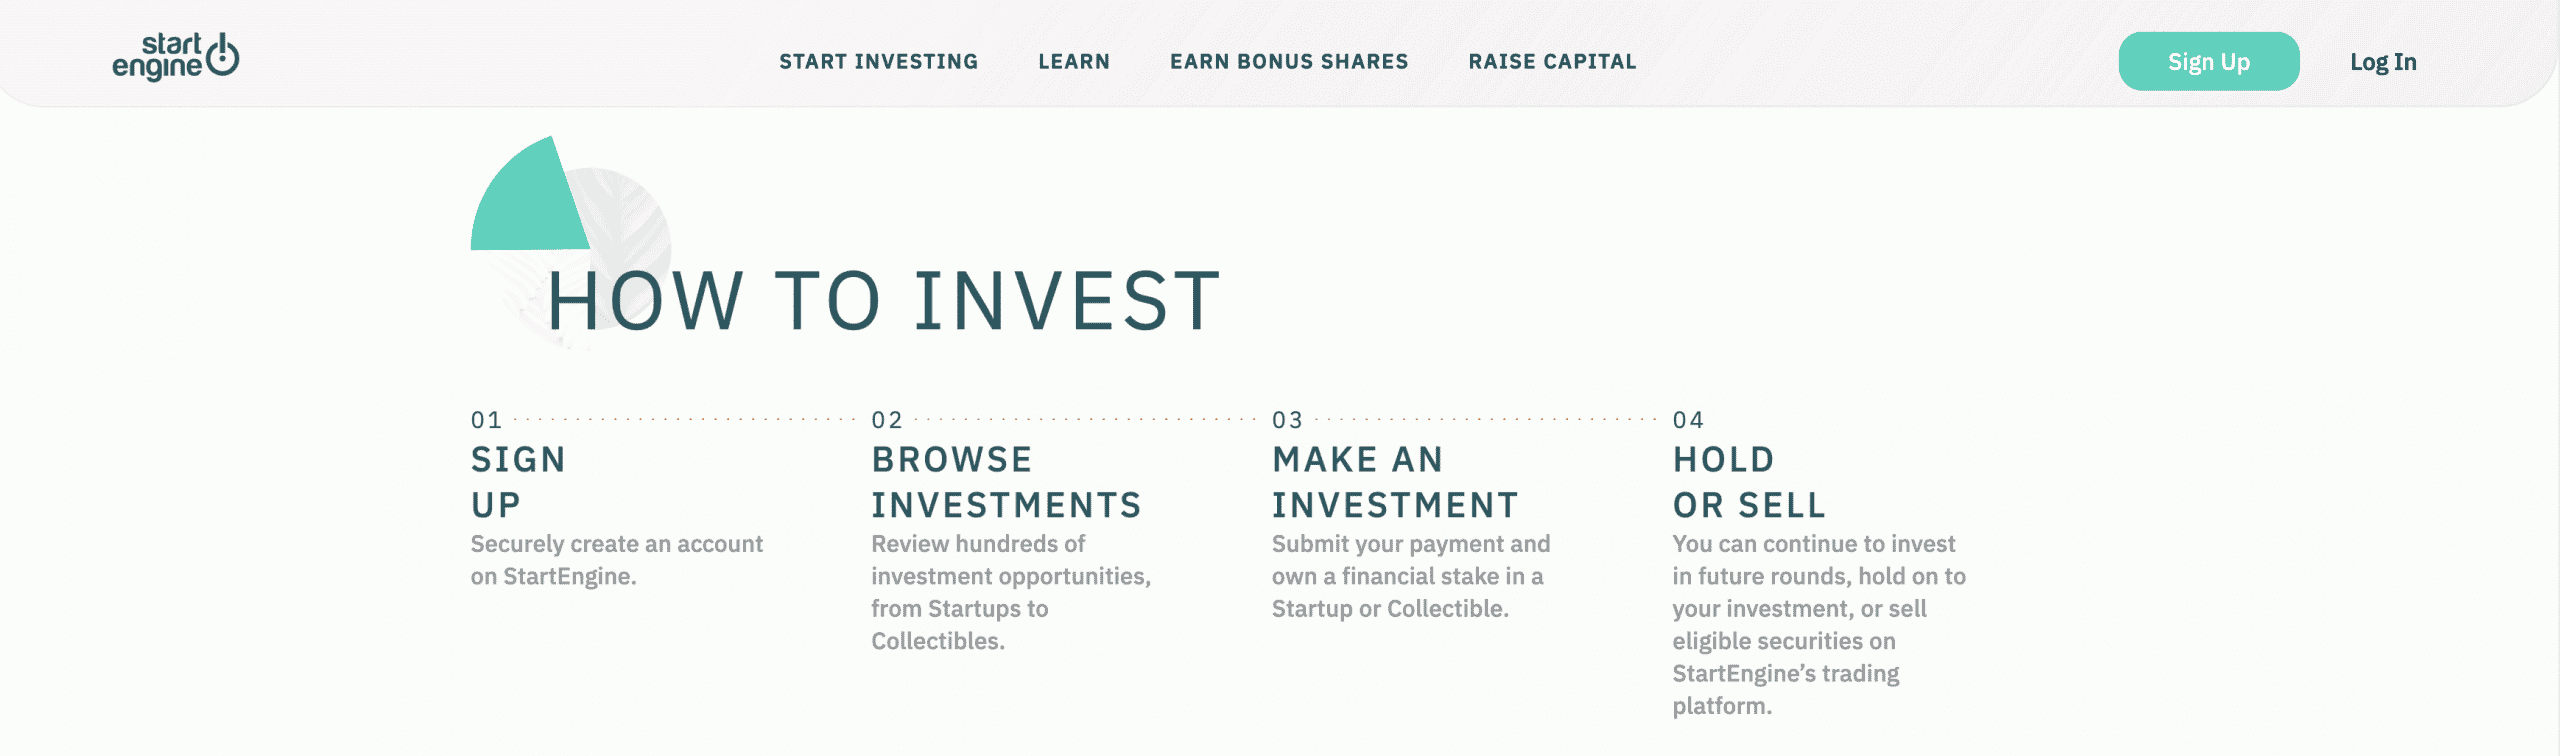 Start Engine - StartEngine is an Equity Crowdfunding platform